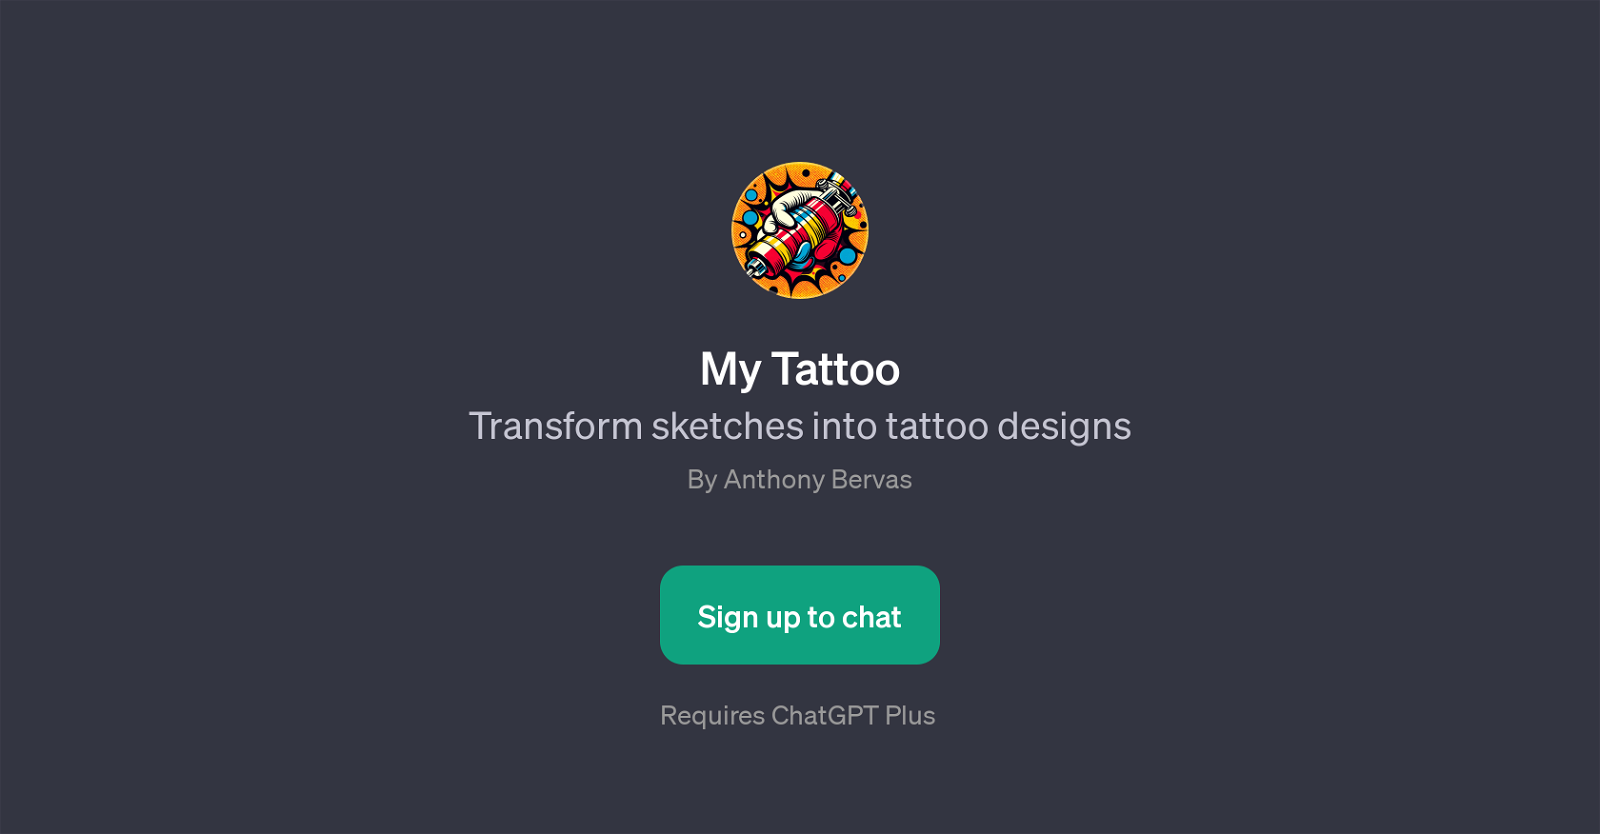 My Tattoo website